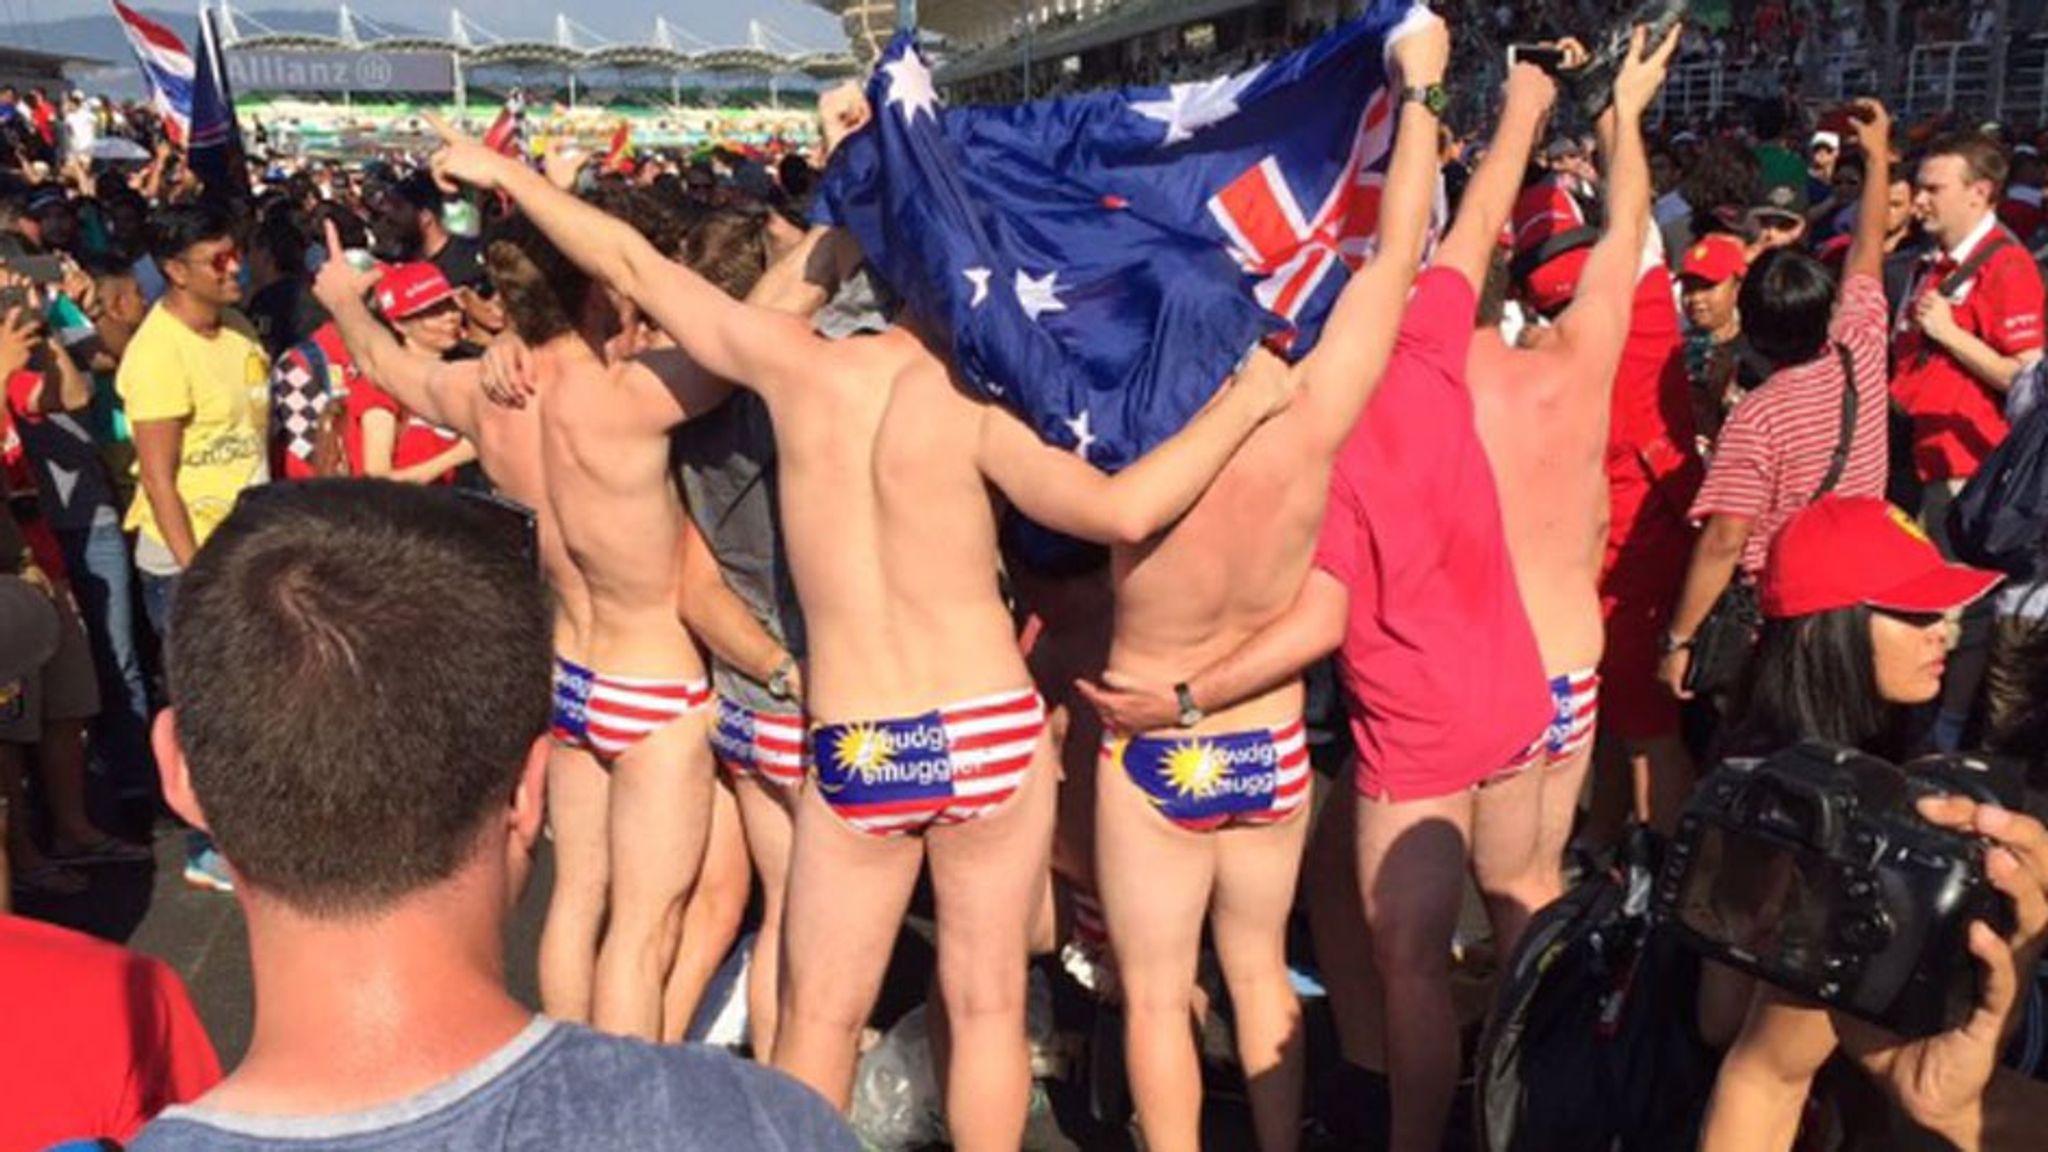 Myer Australia slammed over offensive men's and women's underwear